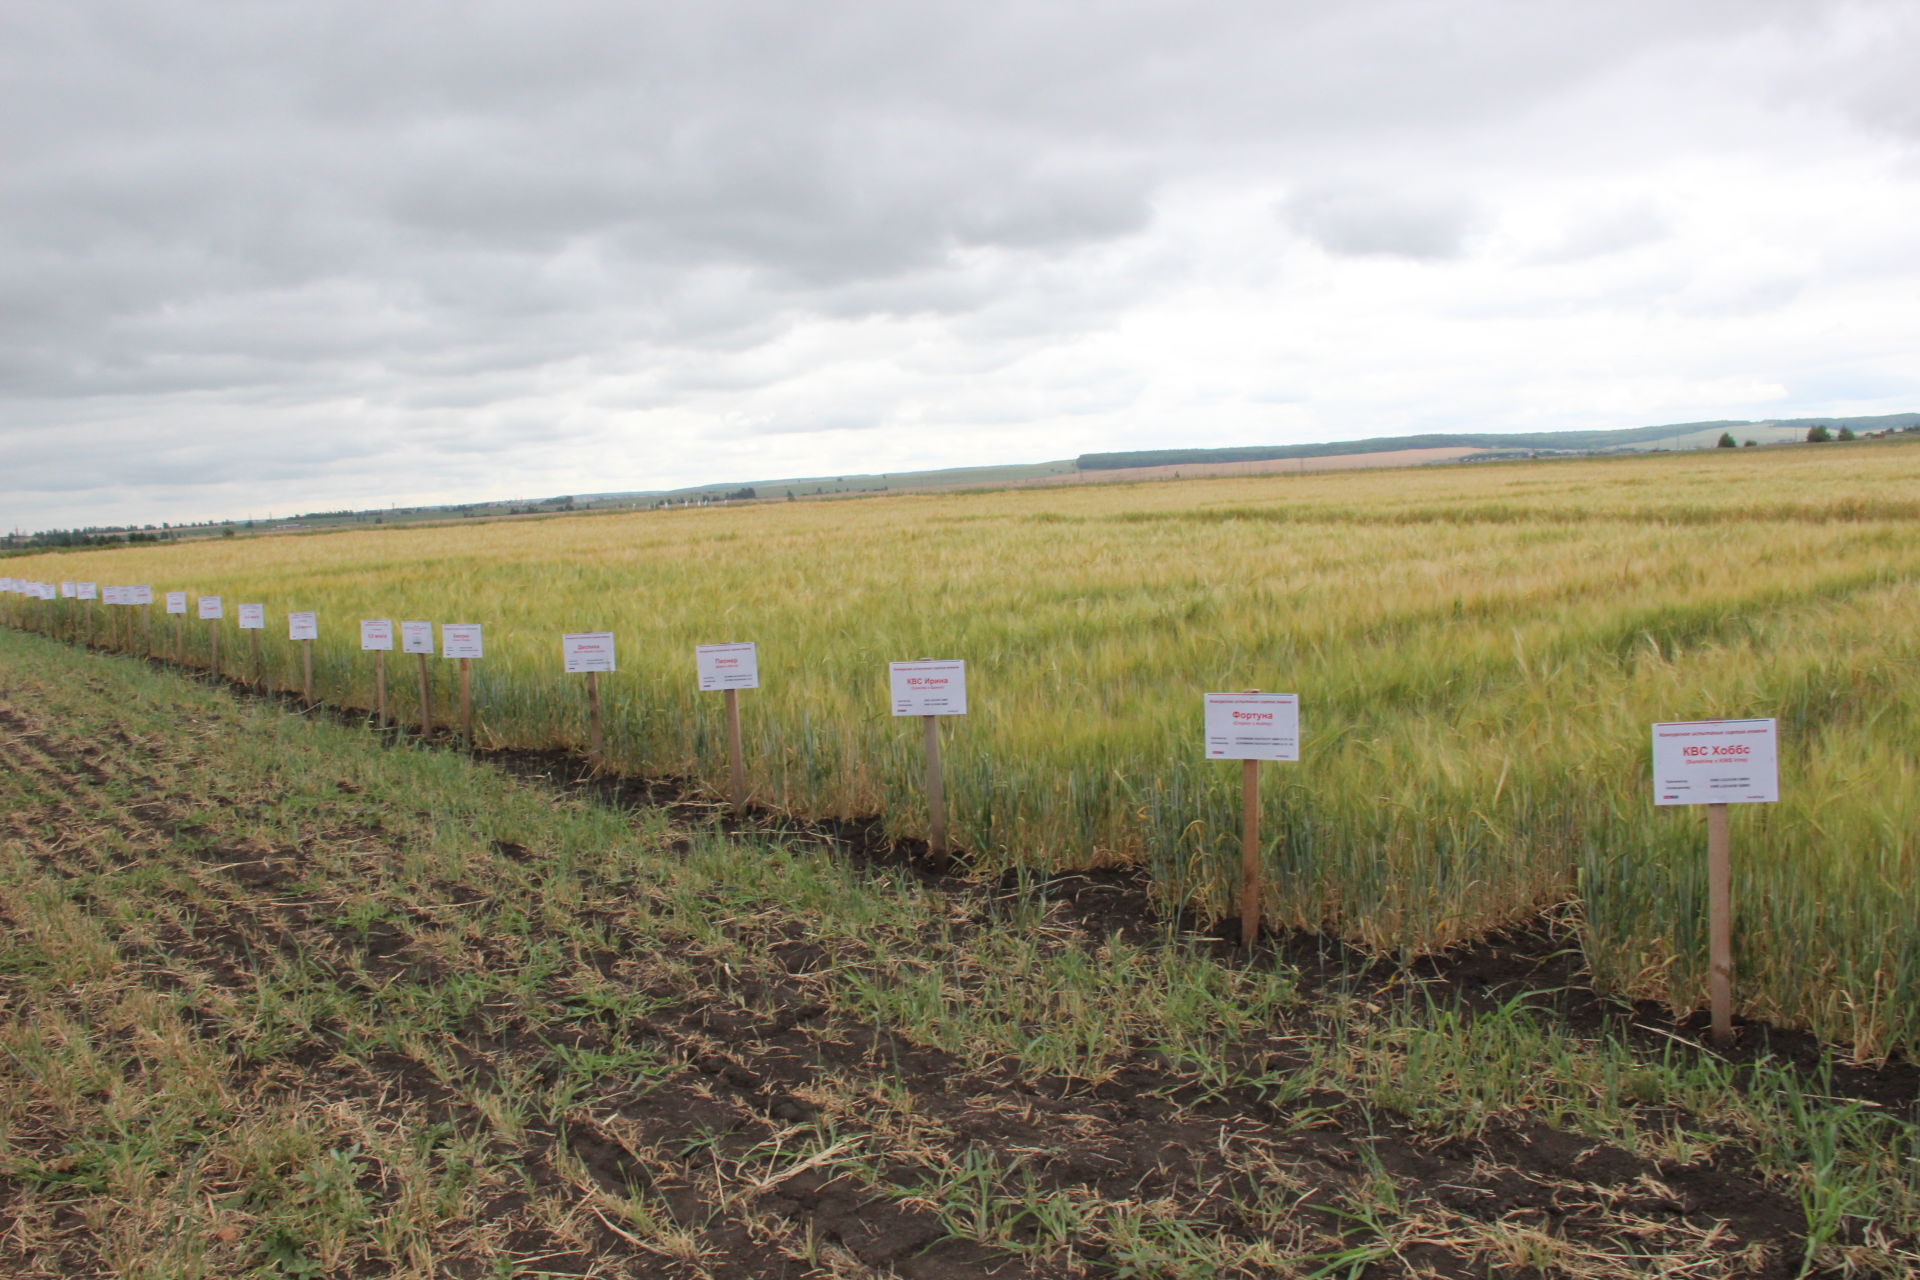 Аграрии со всего Татарстана увидели, как с помощью современных технологий выращивают зерновые в Заинском районе